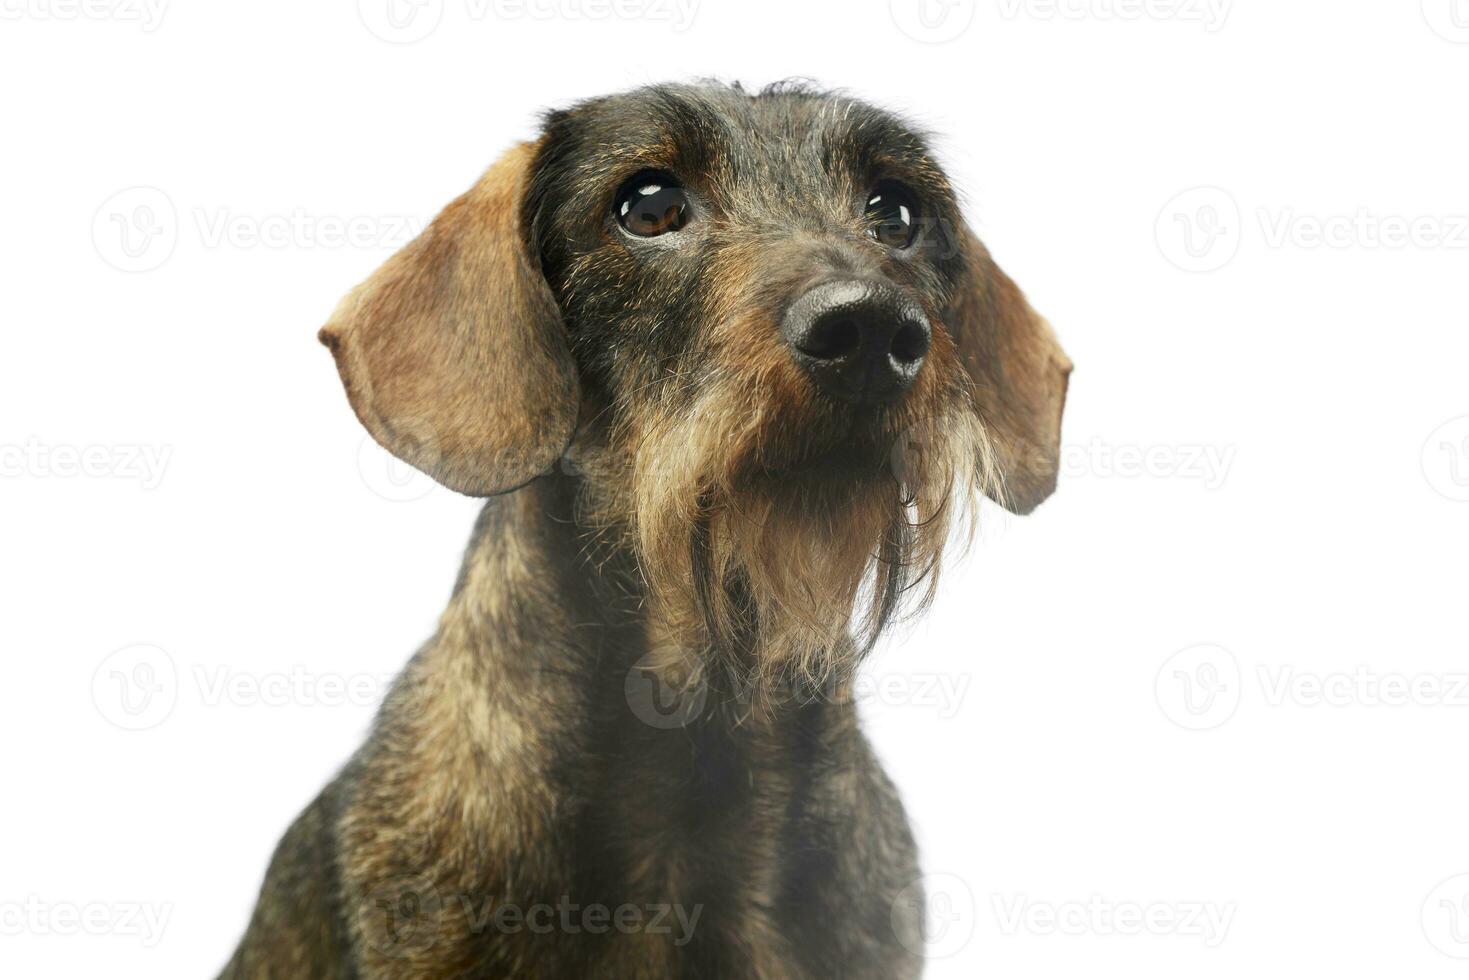 retrato de un adorable perro tejonero foto